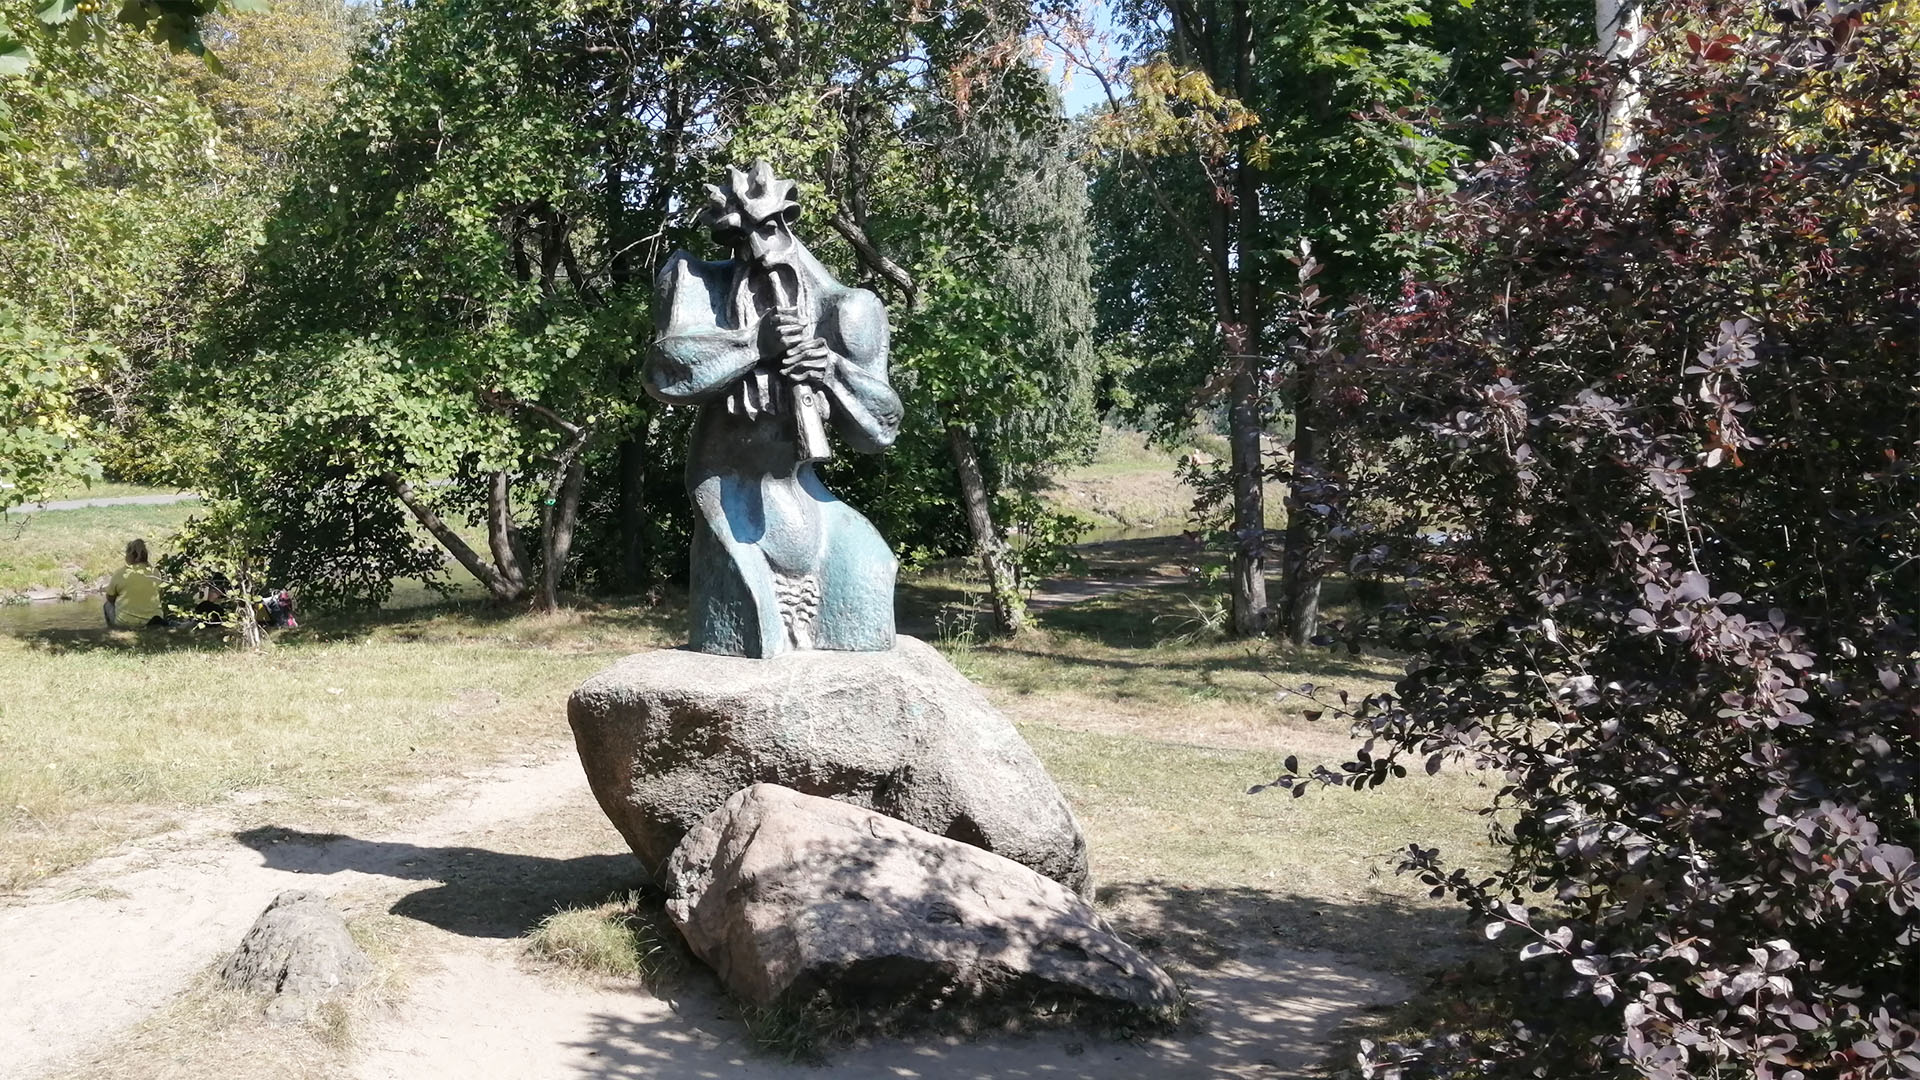 Скульптура лесного бога играющего на дудочке установлена на камне-валуне.